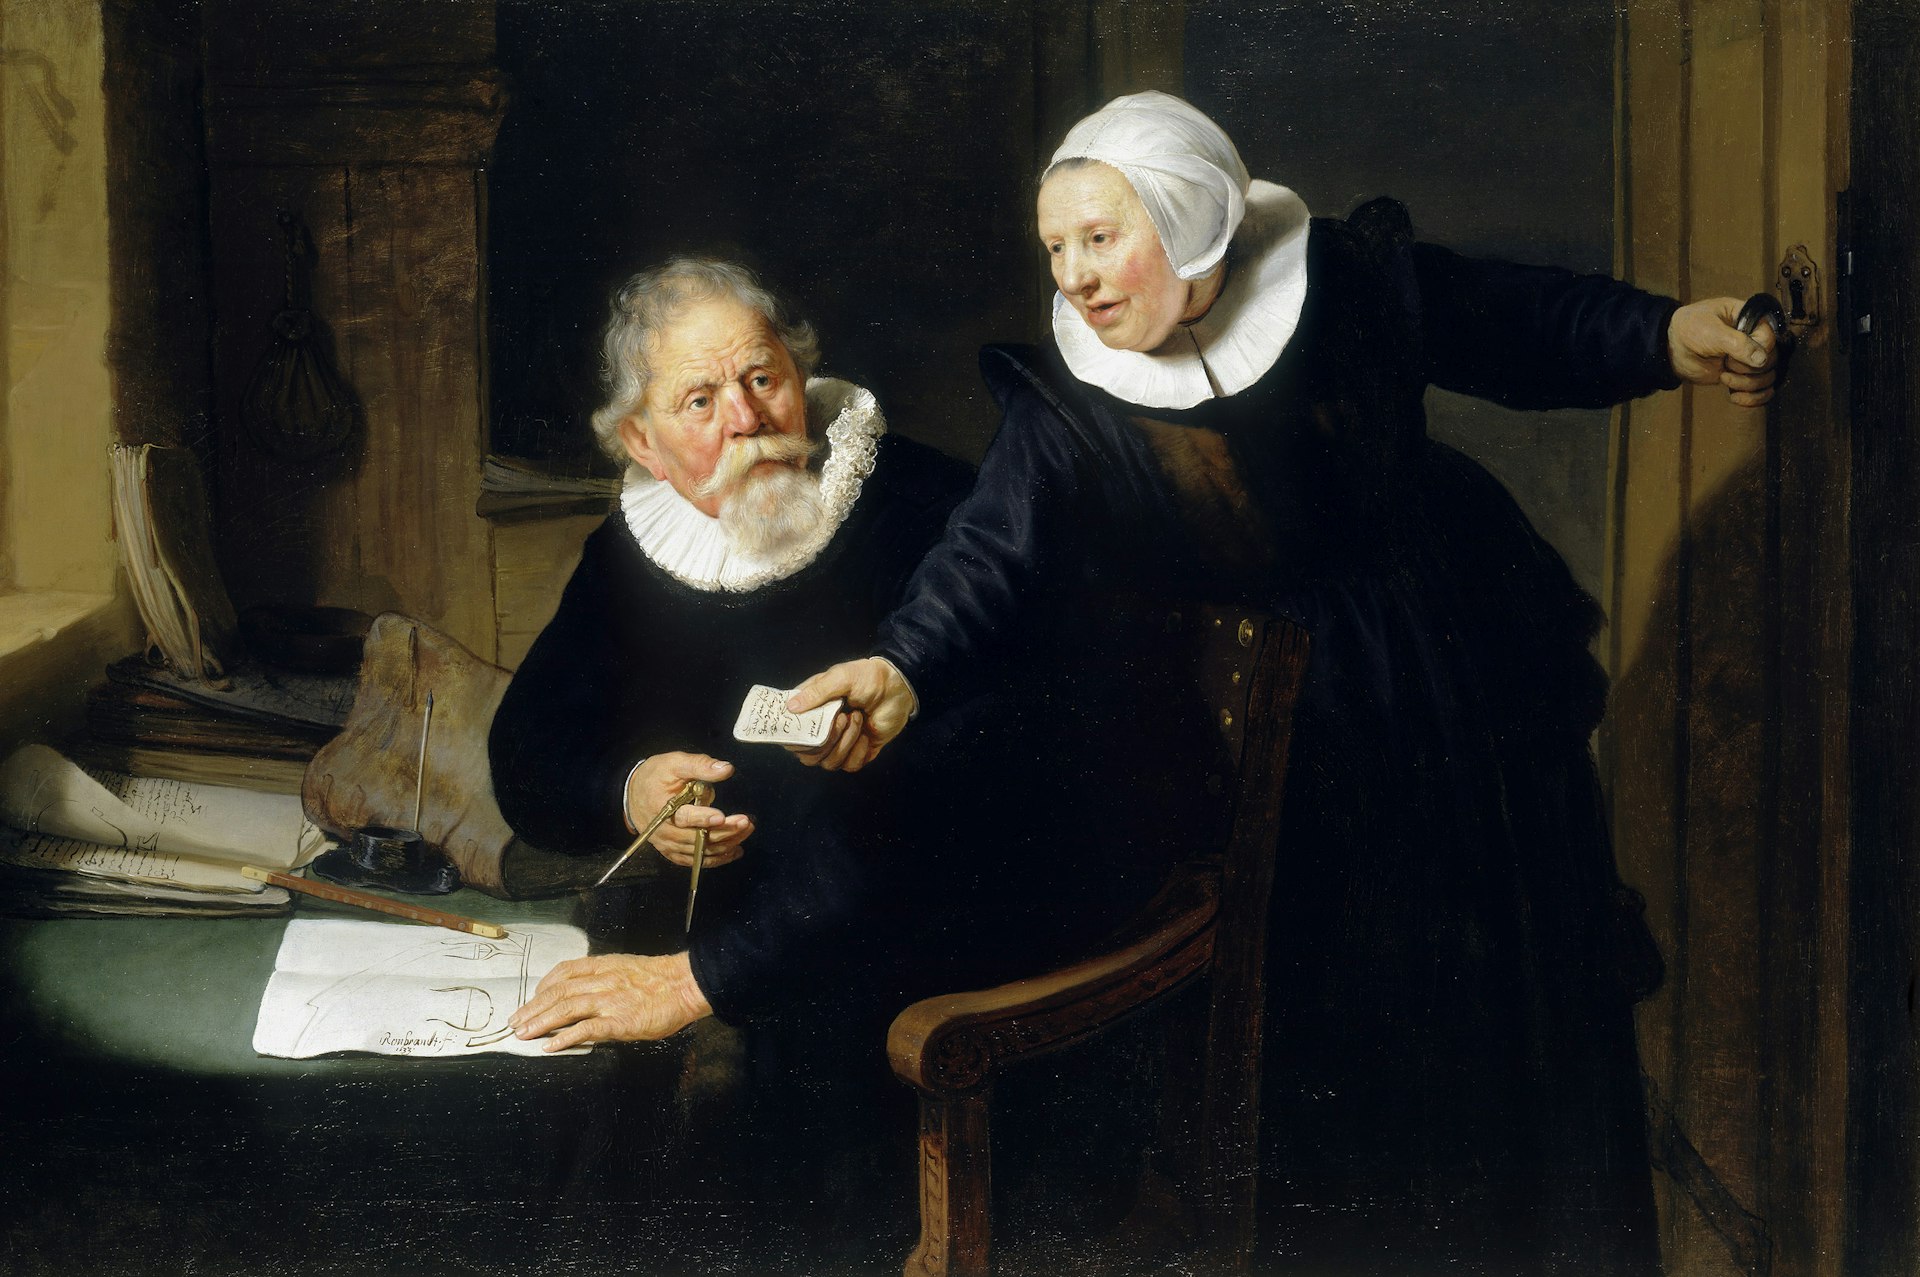 Rembrandt van Rijn, Portrait of Jan Rijcksen and his Wife, Griet Jans, (‘The Shipbuilder and his Wife’), 1633